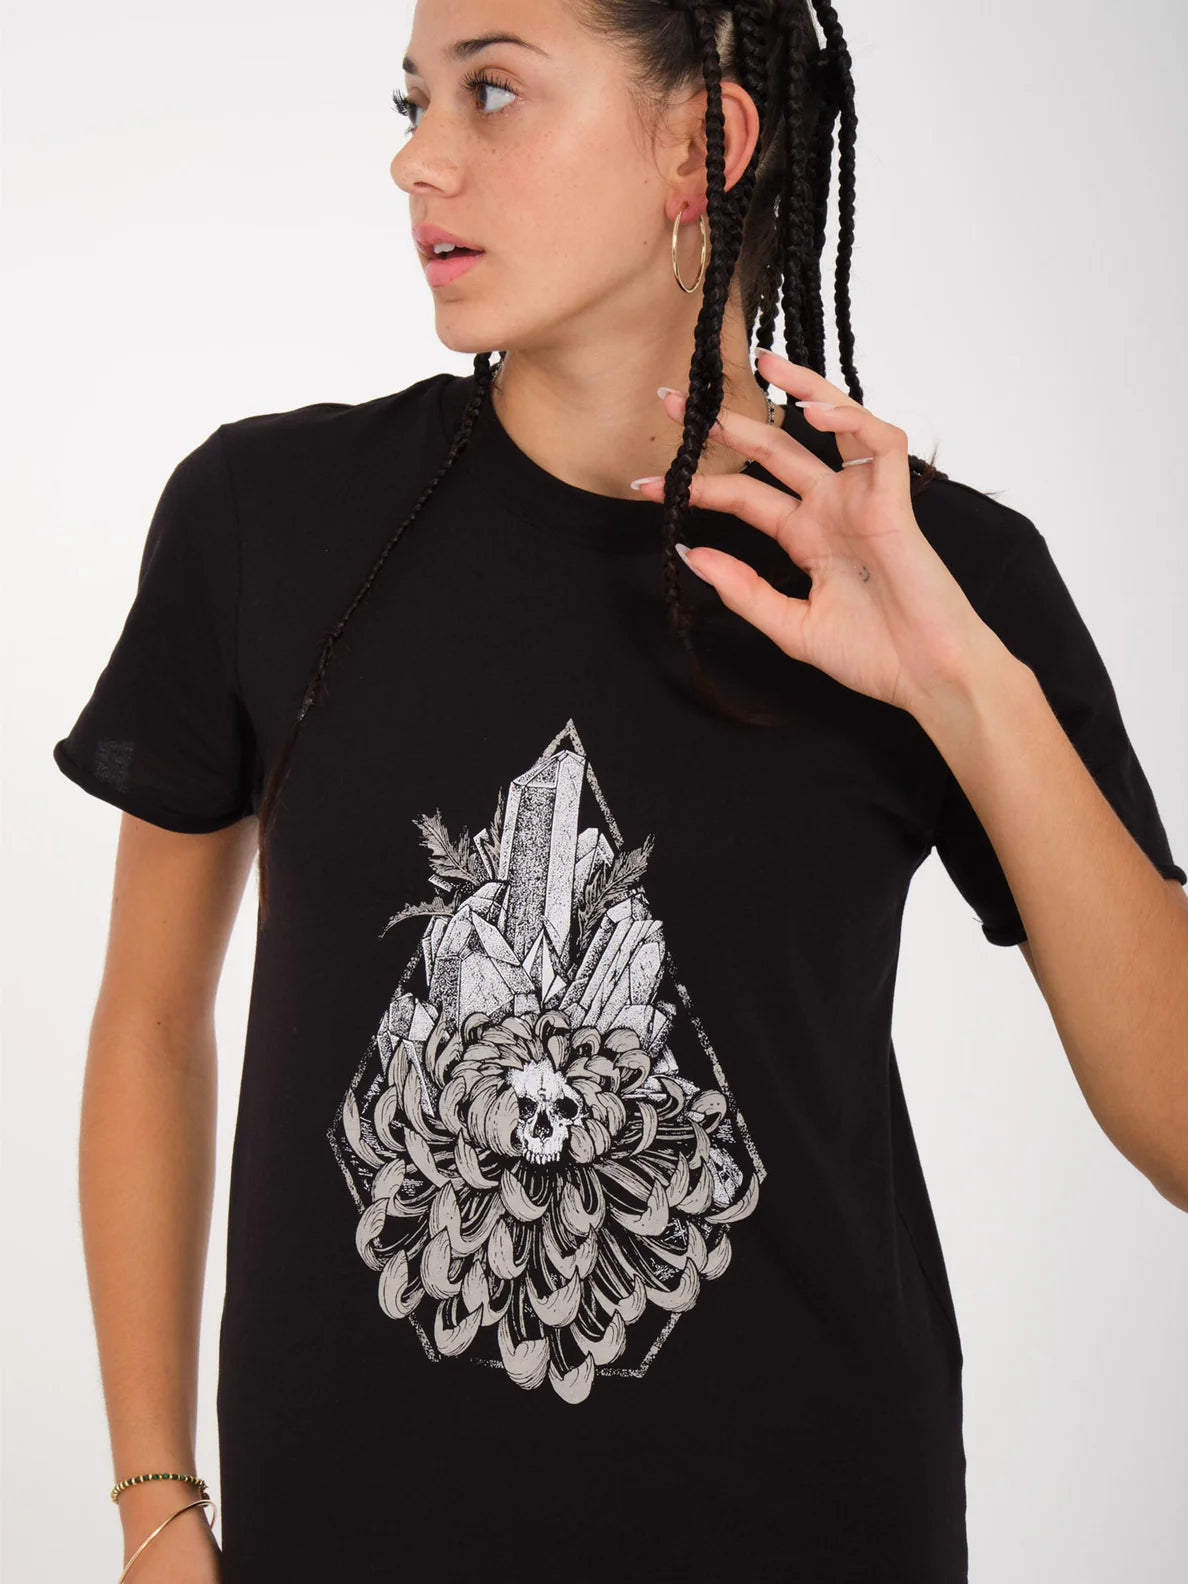 Camiseta Chica Volcom Radical Daze - Black